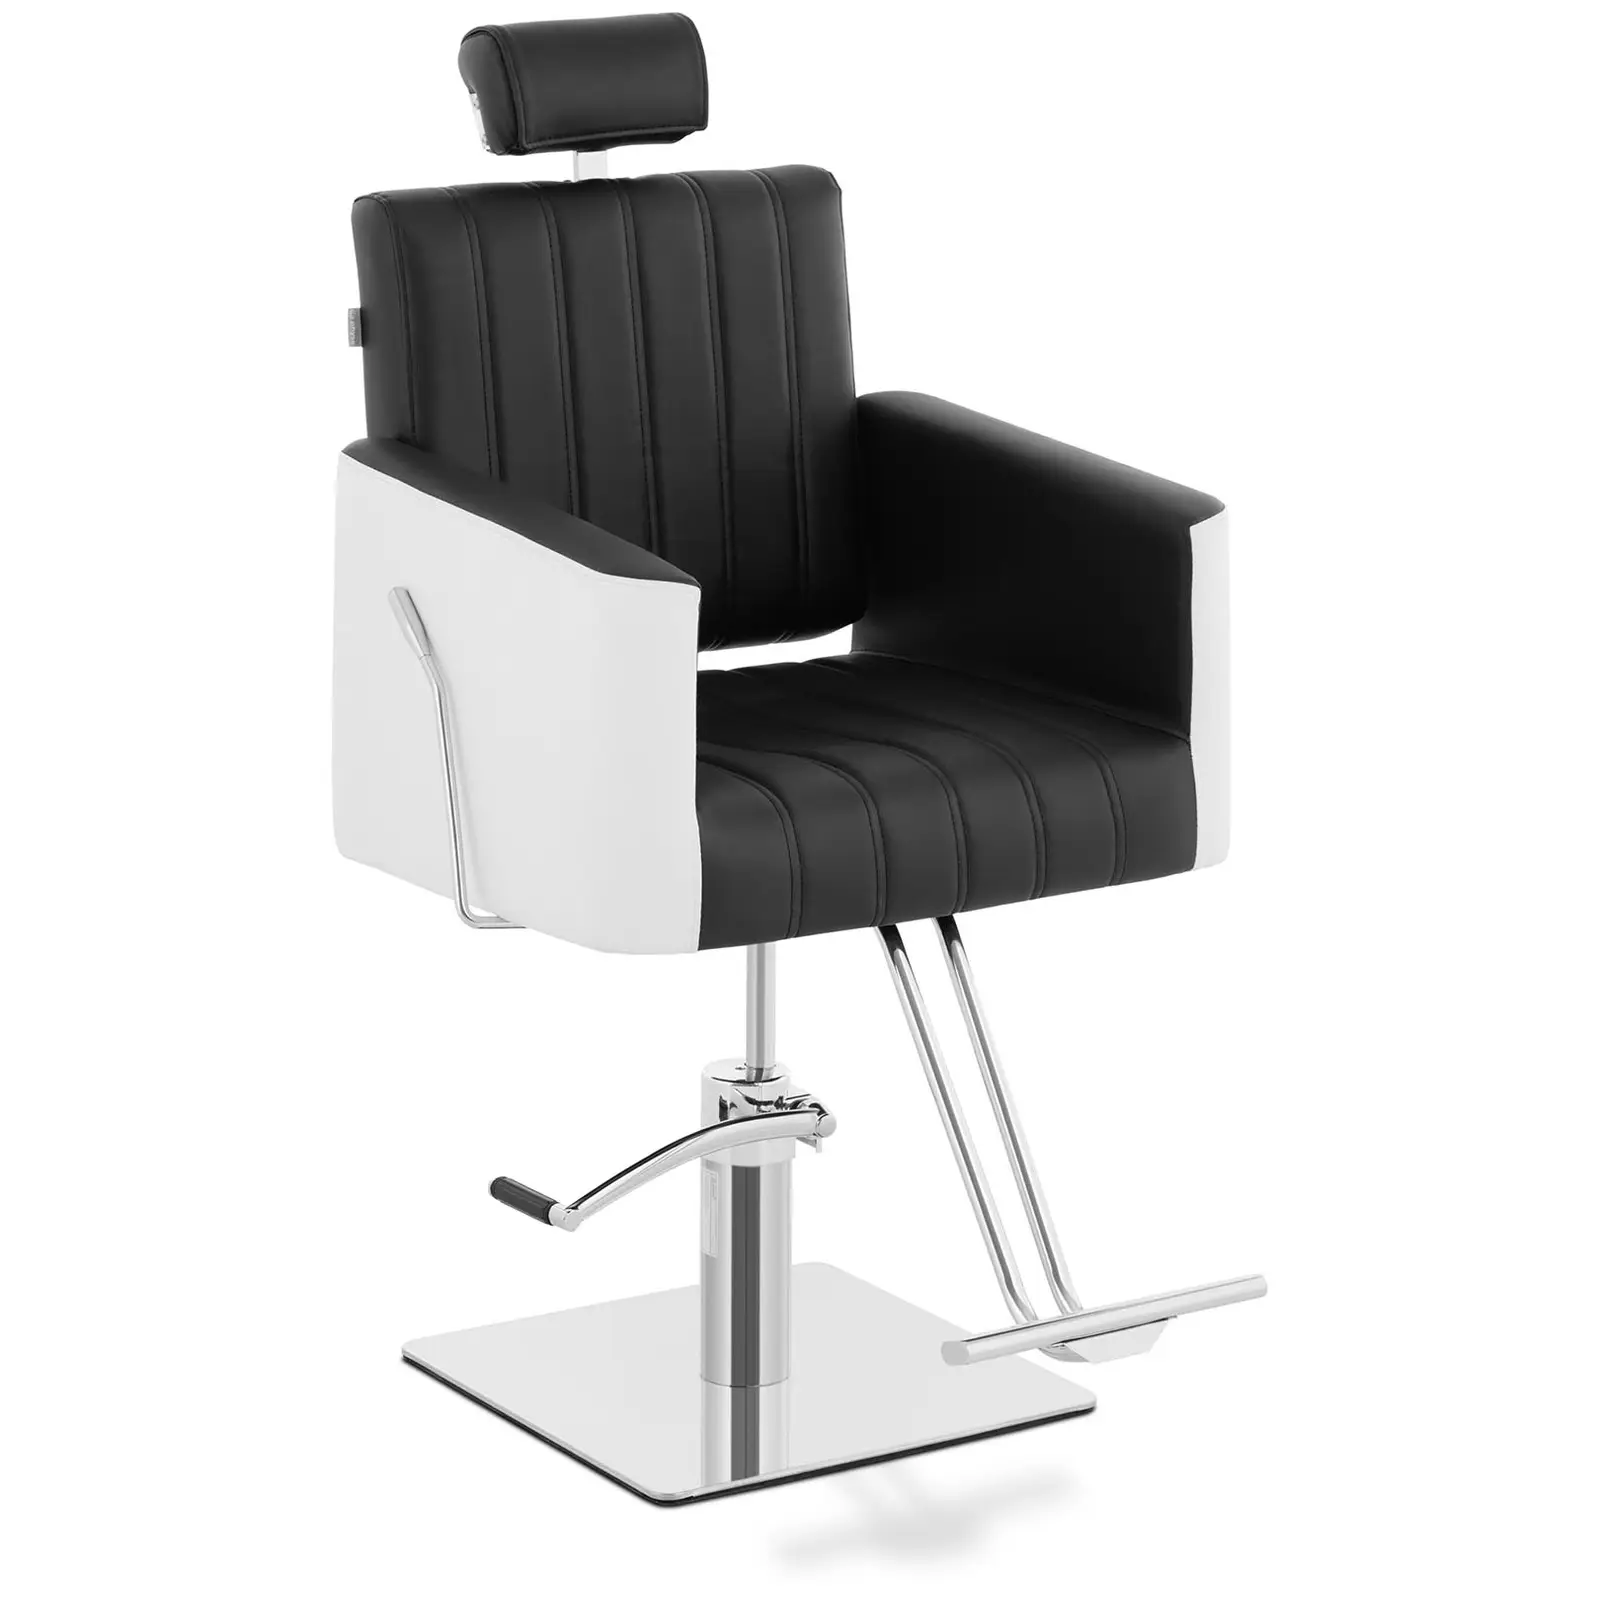 Produtos recondicionados Cadeira de cabeleireiro com apoio para os pés - 470 x 630 mm - 150 kg - Preto, Branco